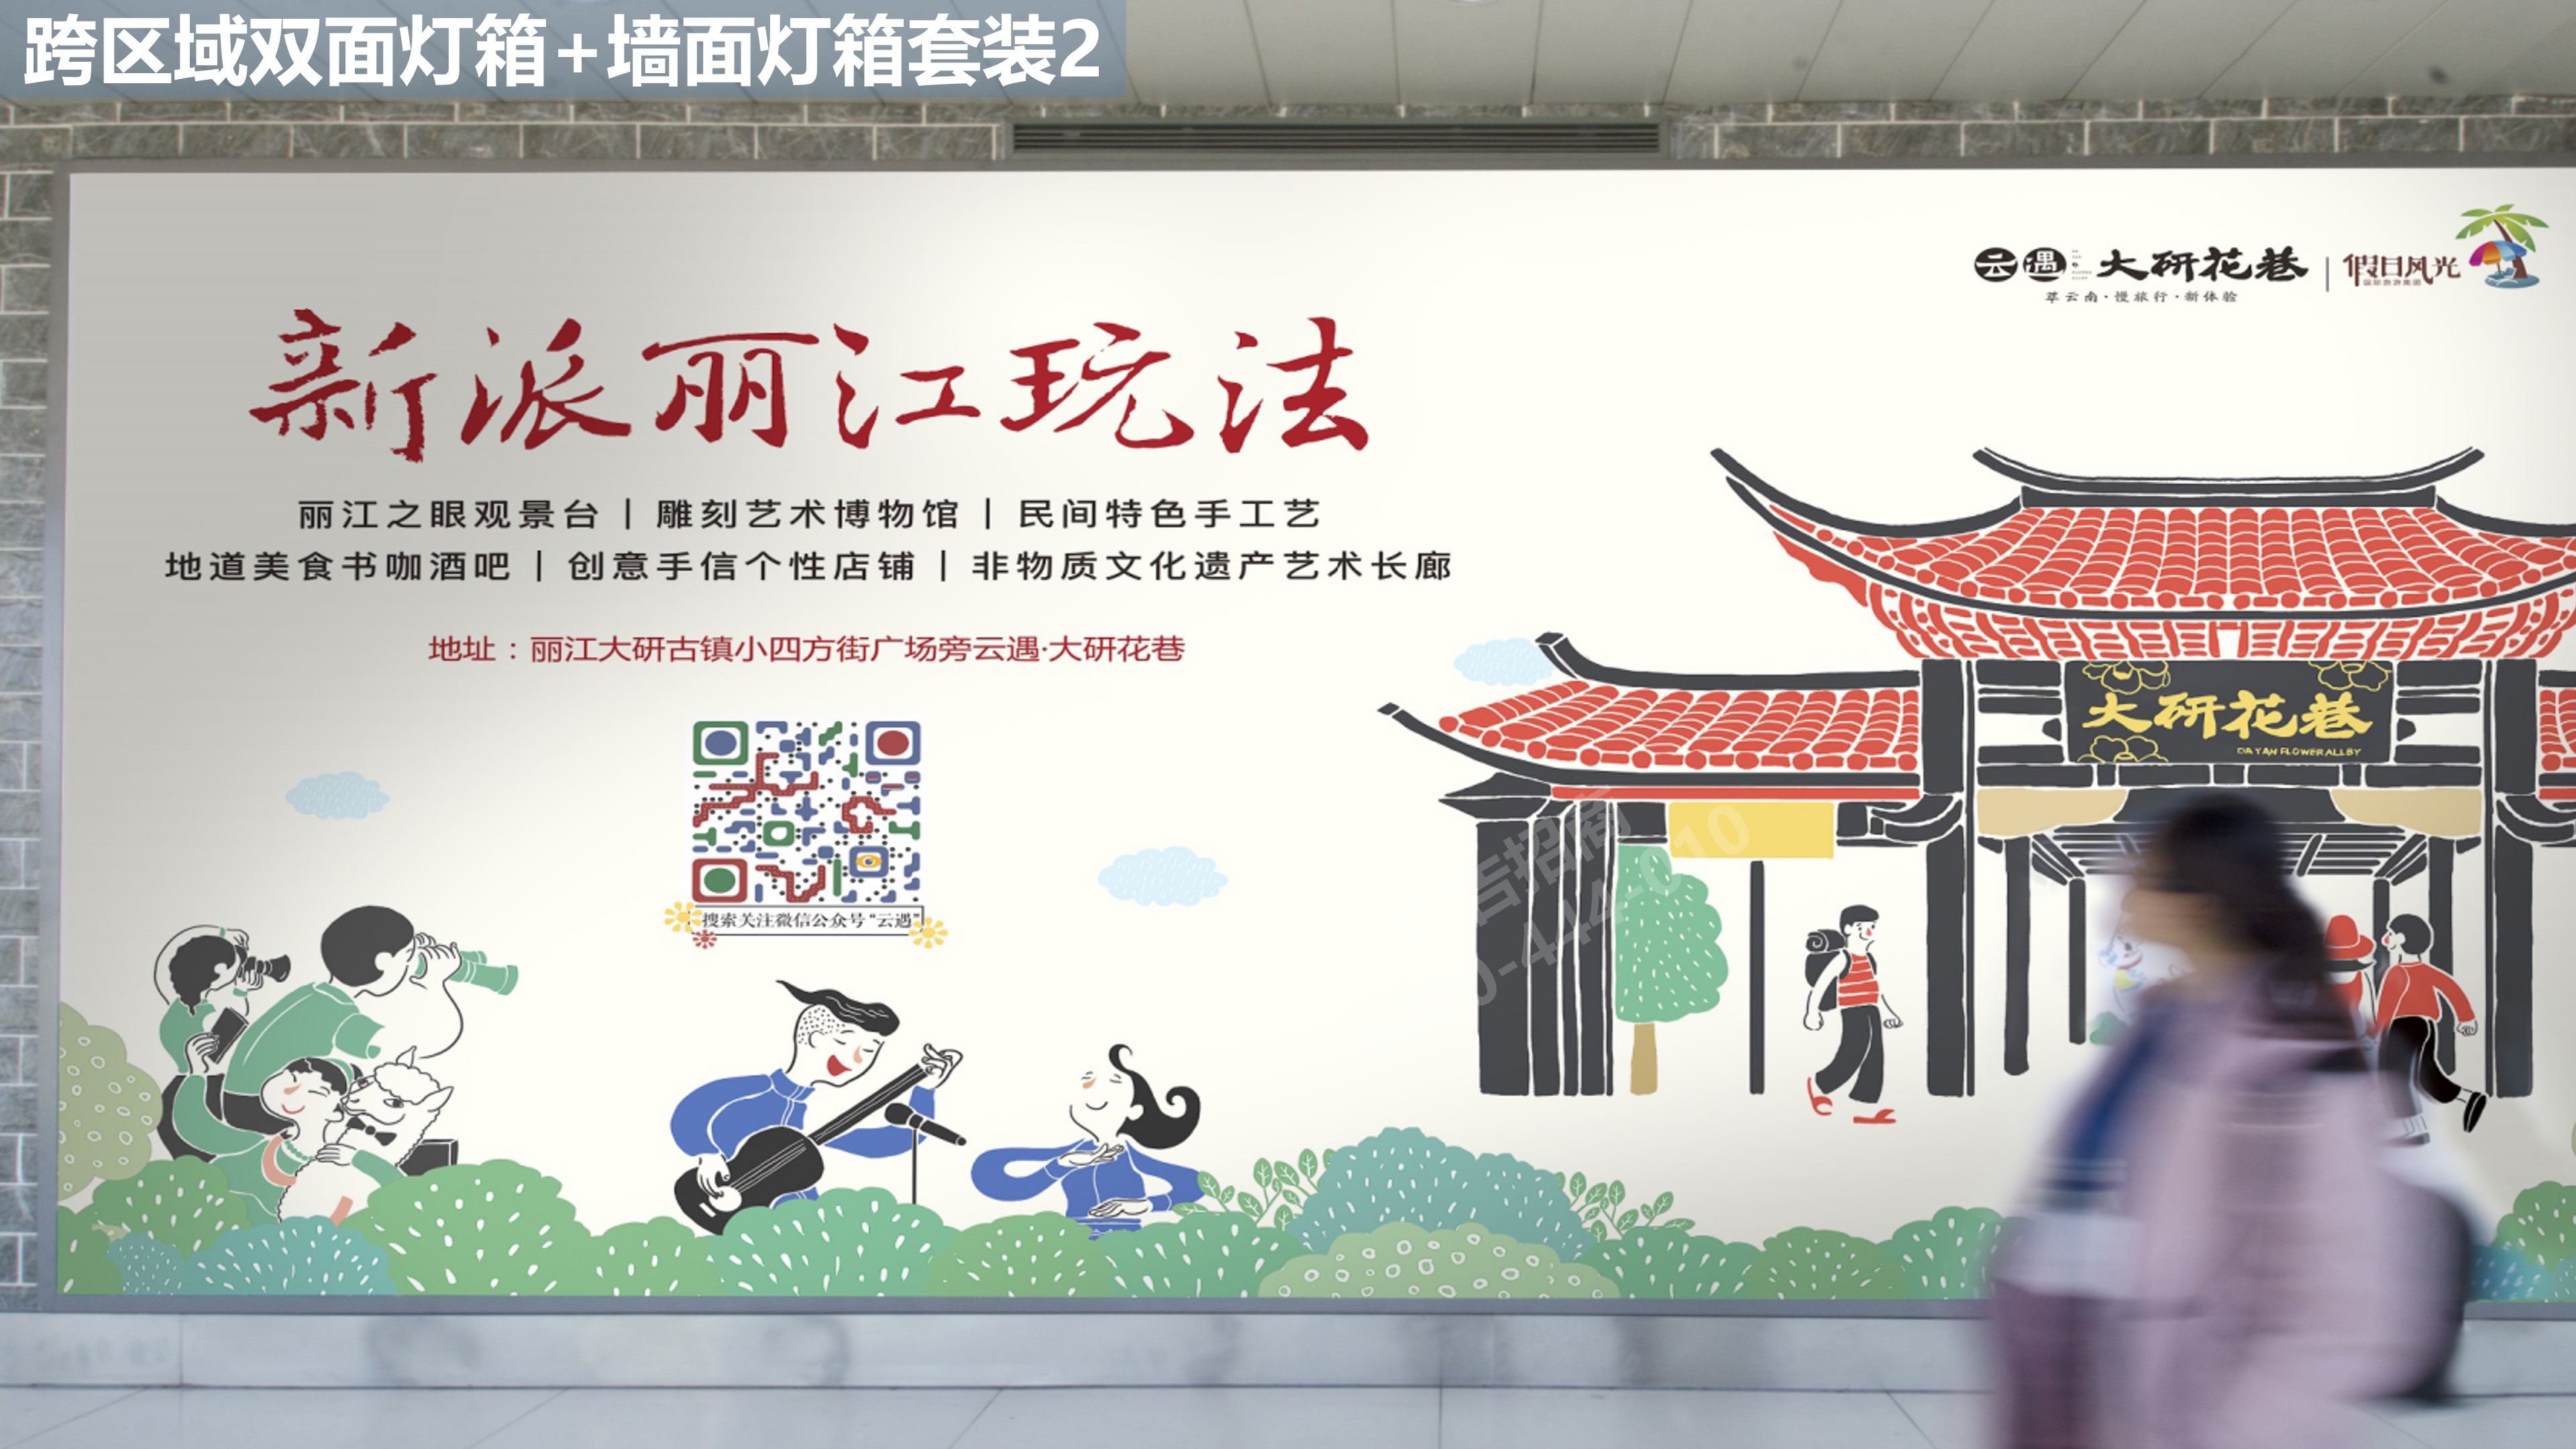 丽江机场跨区域候机广告2